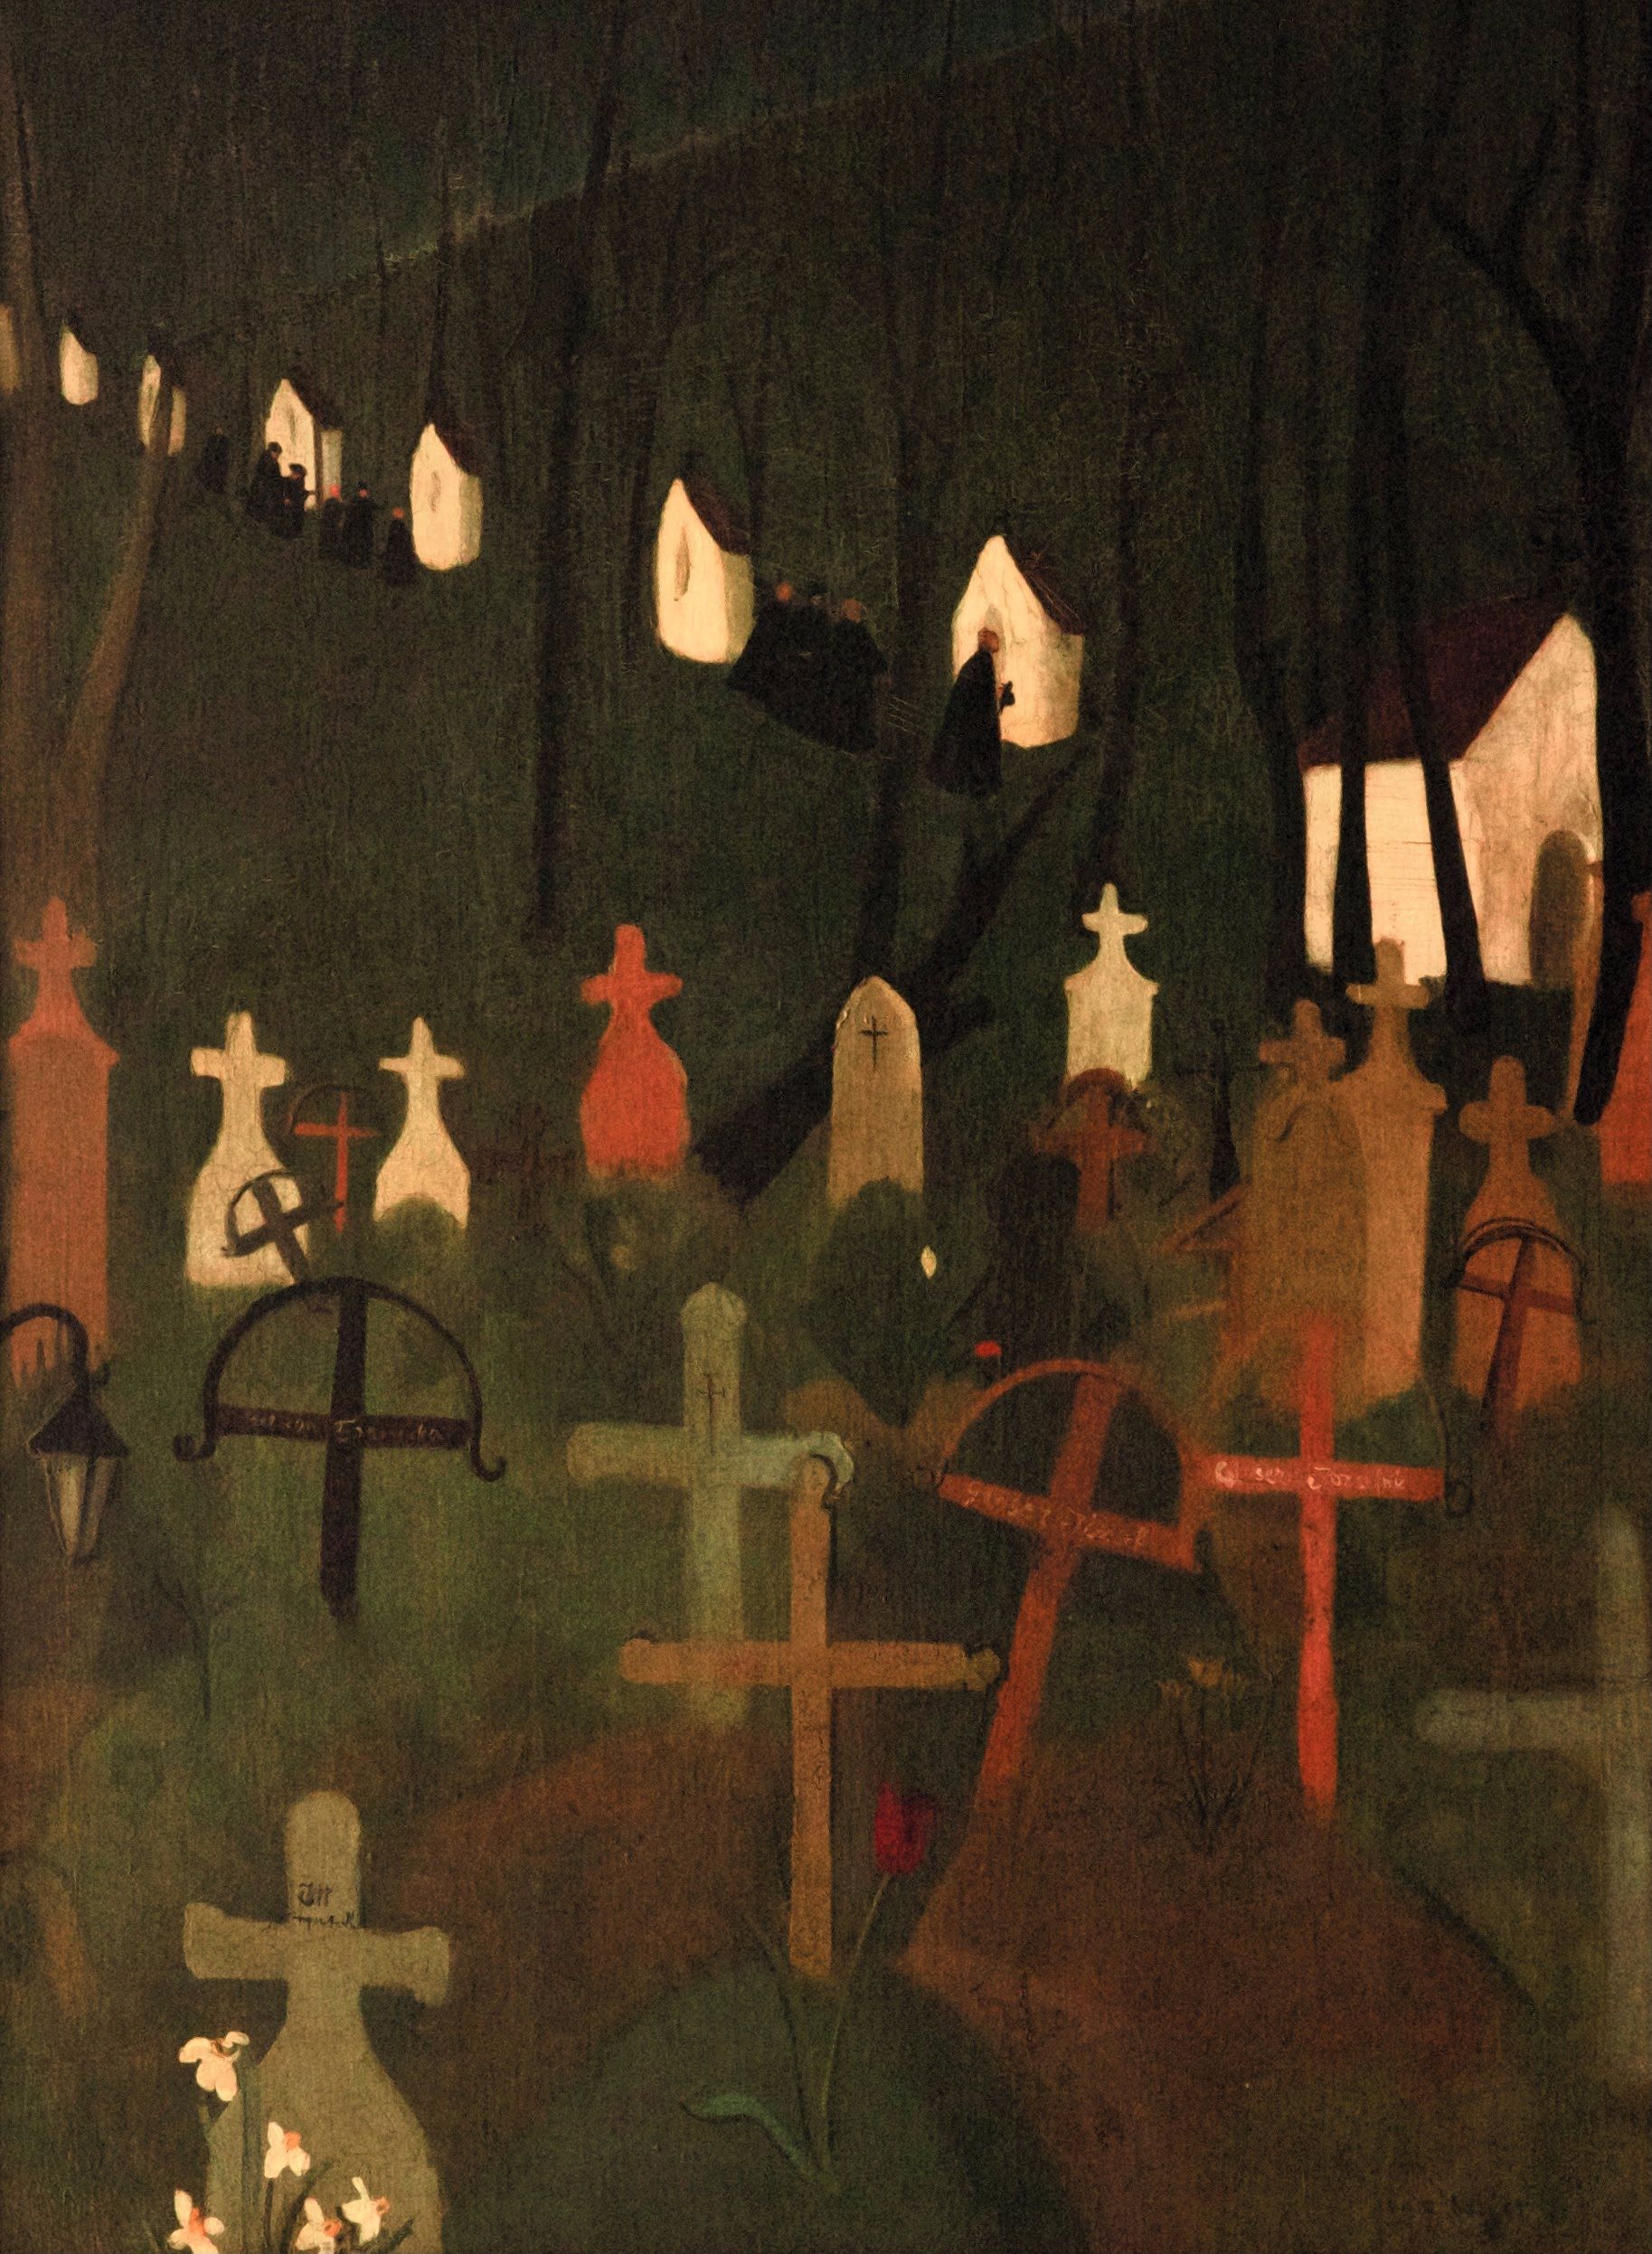 El alegre cementerio by Amrita Sher-Gil - 1939 - 75 x 100,5 cm Museo Nacional de Nueva Delhi, India